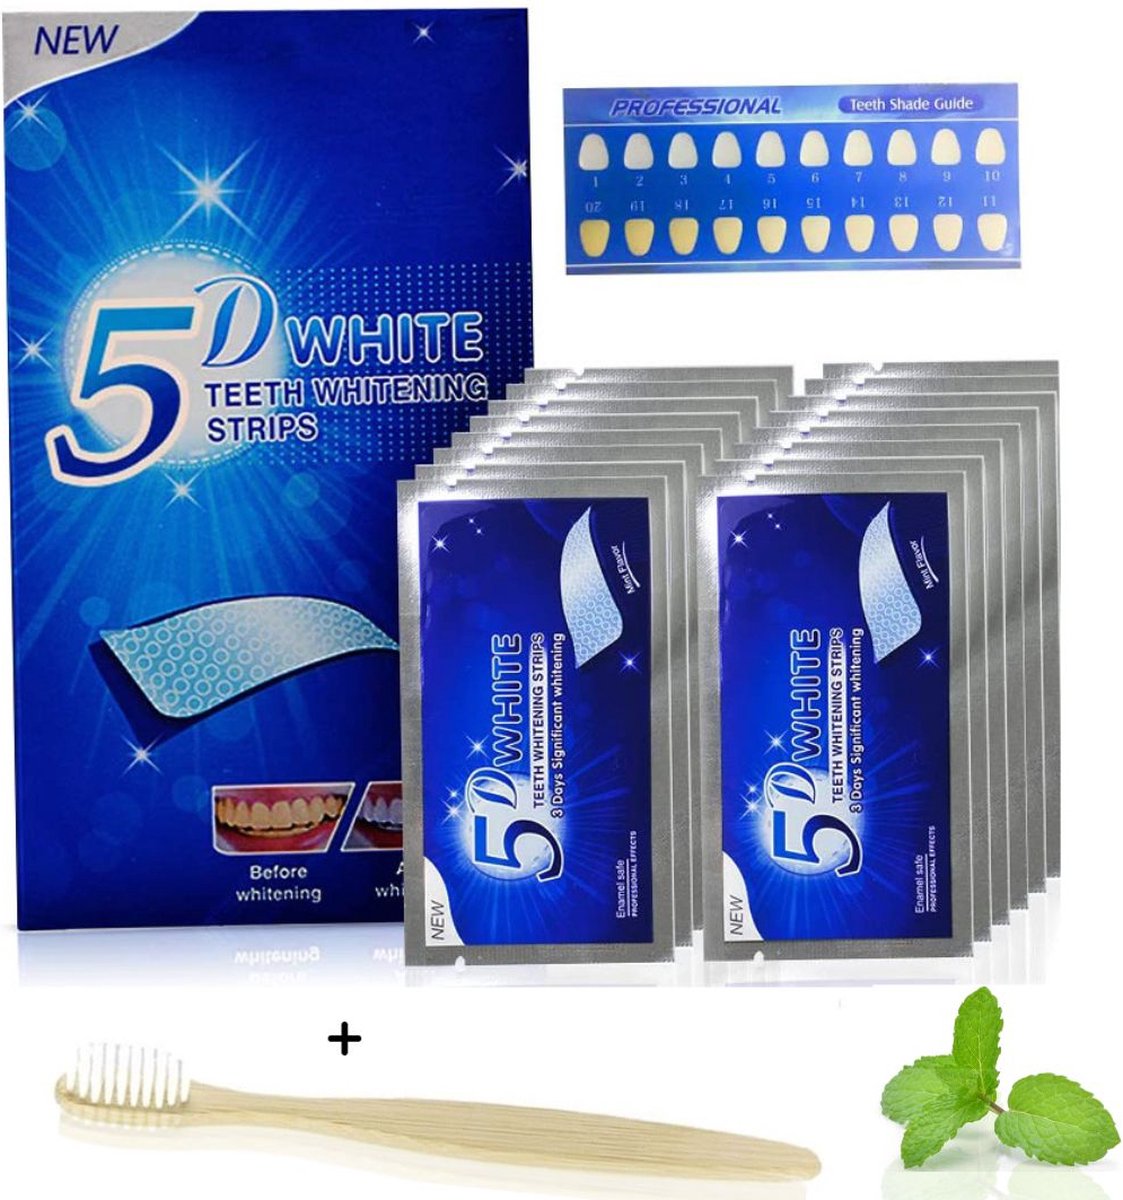 KoopKrachtig - Teeth whitening strips - whitening strips - tandenbleekset - tandenblekers strips - tanden bleken - crest whitestrips - inc. tandenborstel